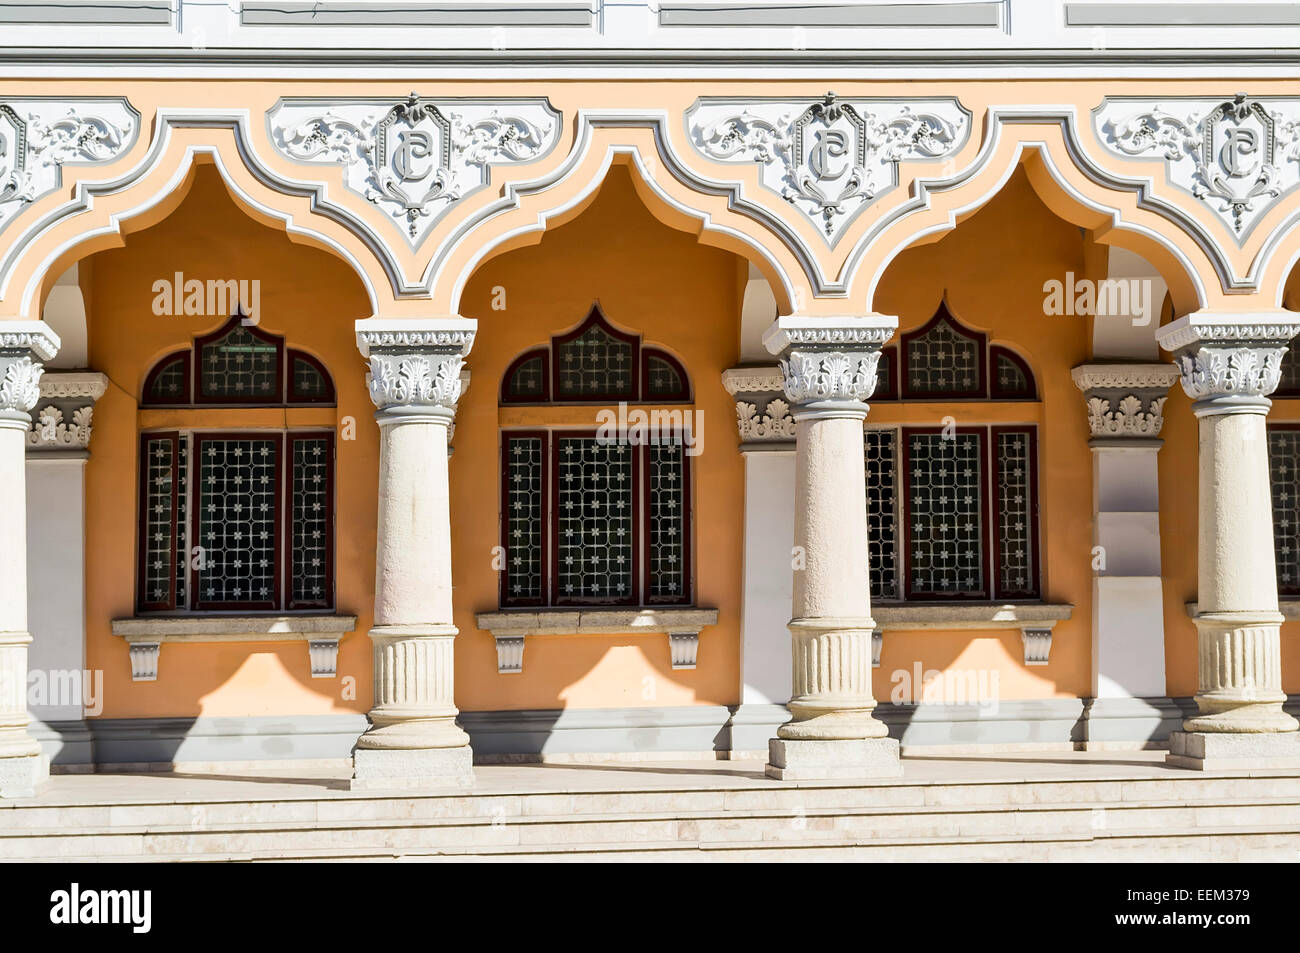 Des détails architecturaux d'un bâtiment historique composé d'une rangée de belles colonnes ioniques Banque D'Images